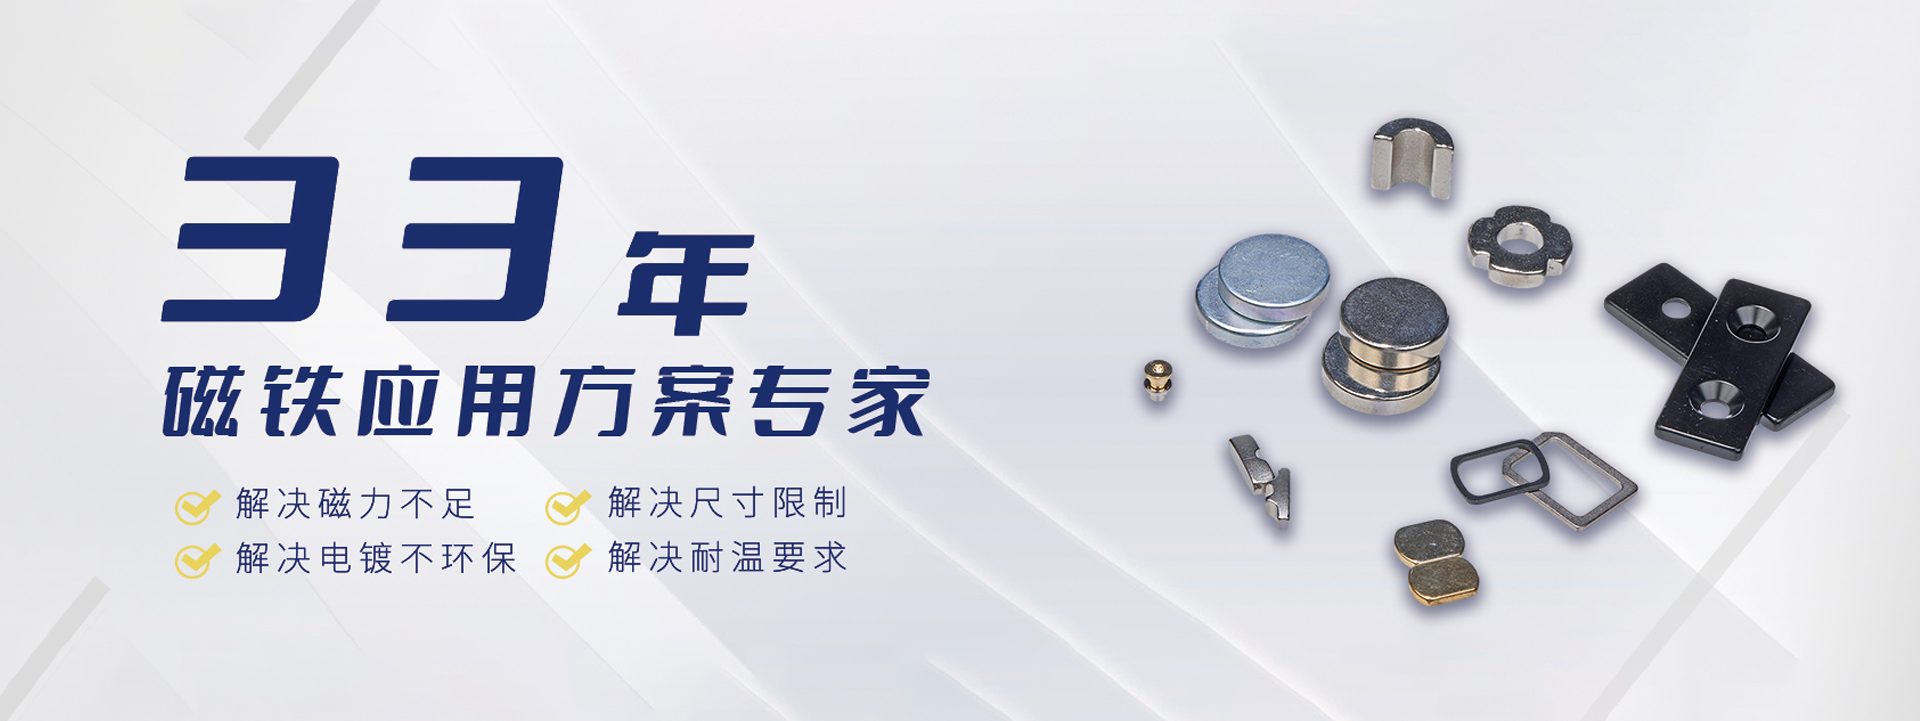 广东大华磁电有限公司，专业从事钕铁硼强磁产品生产厂家